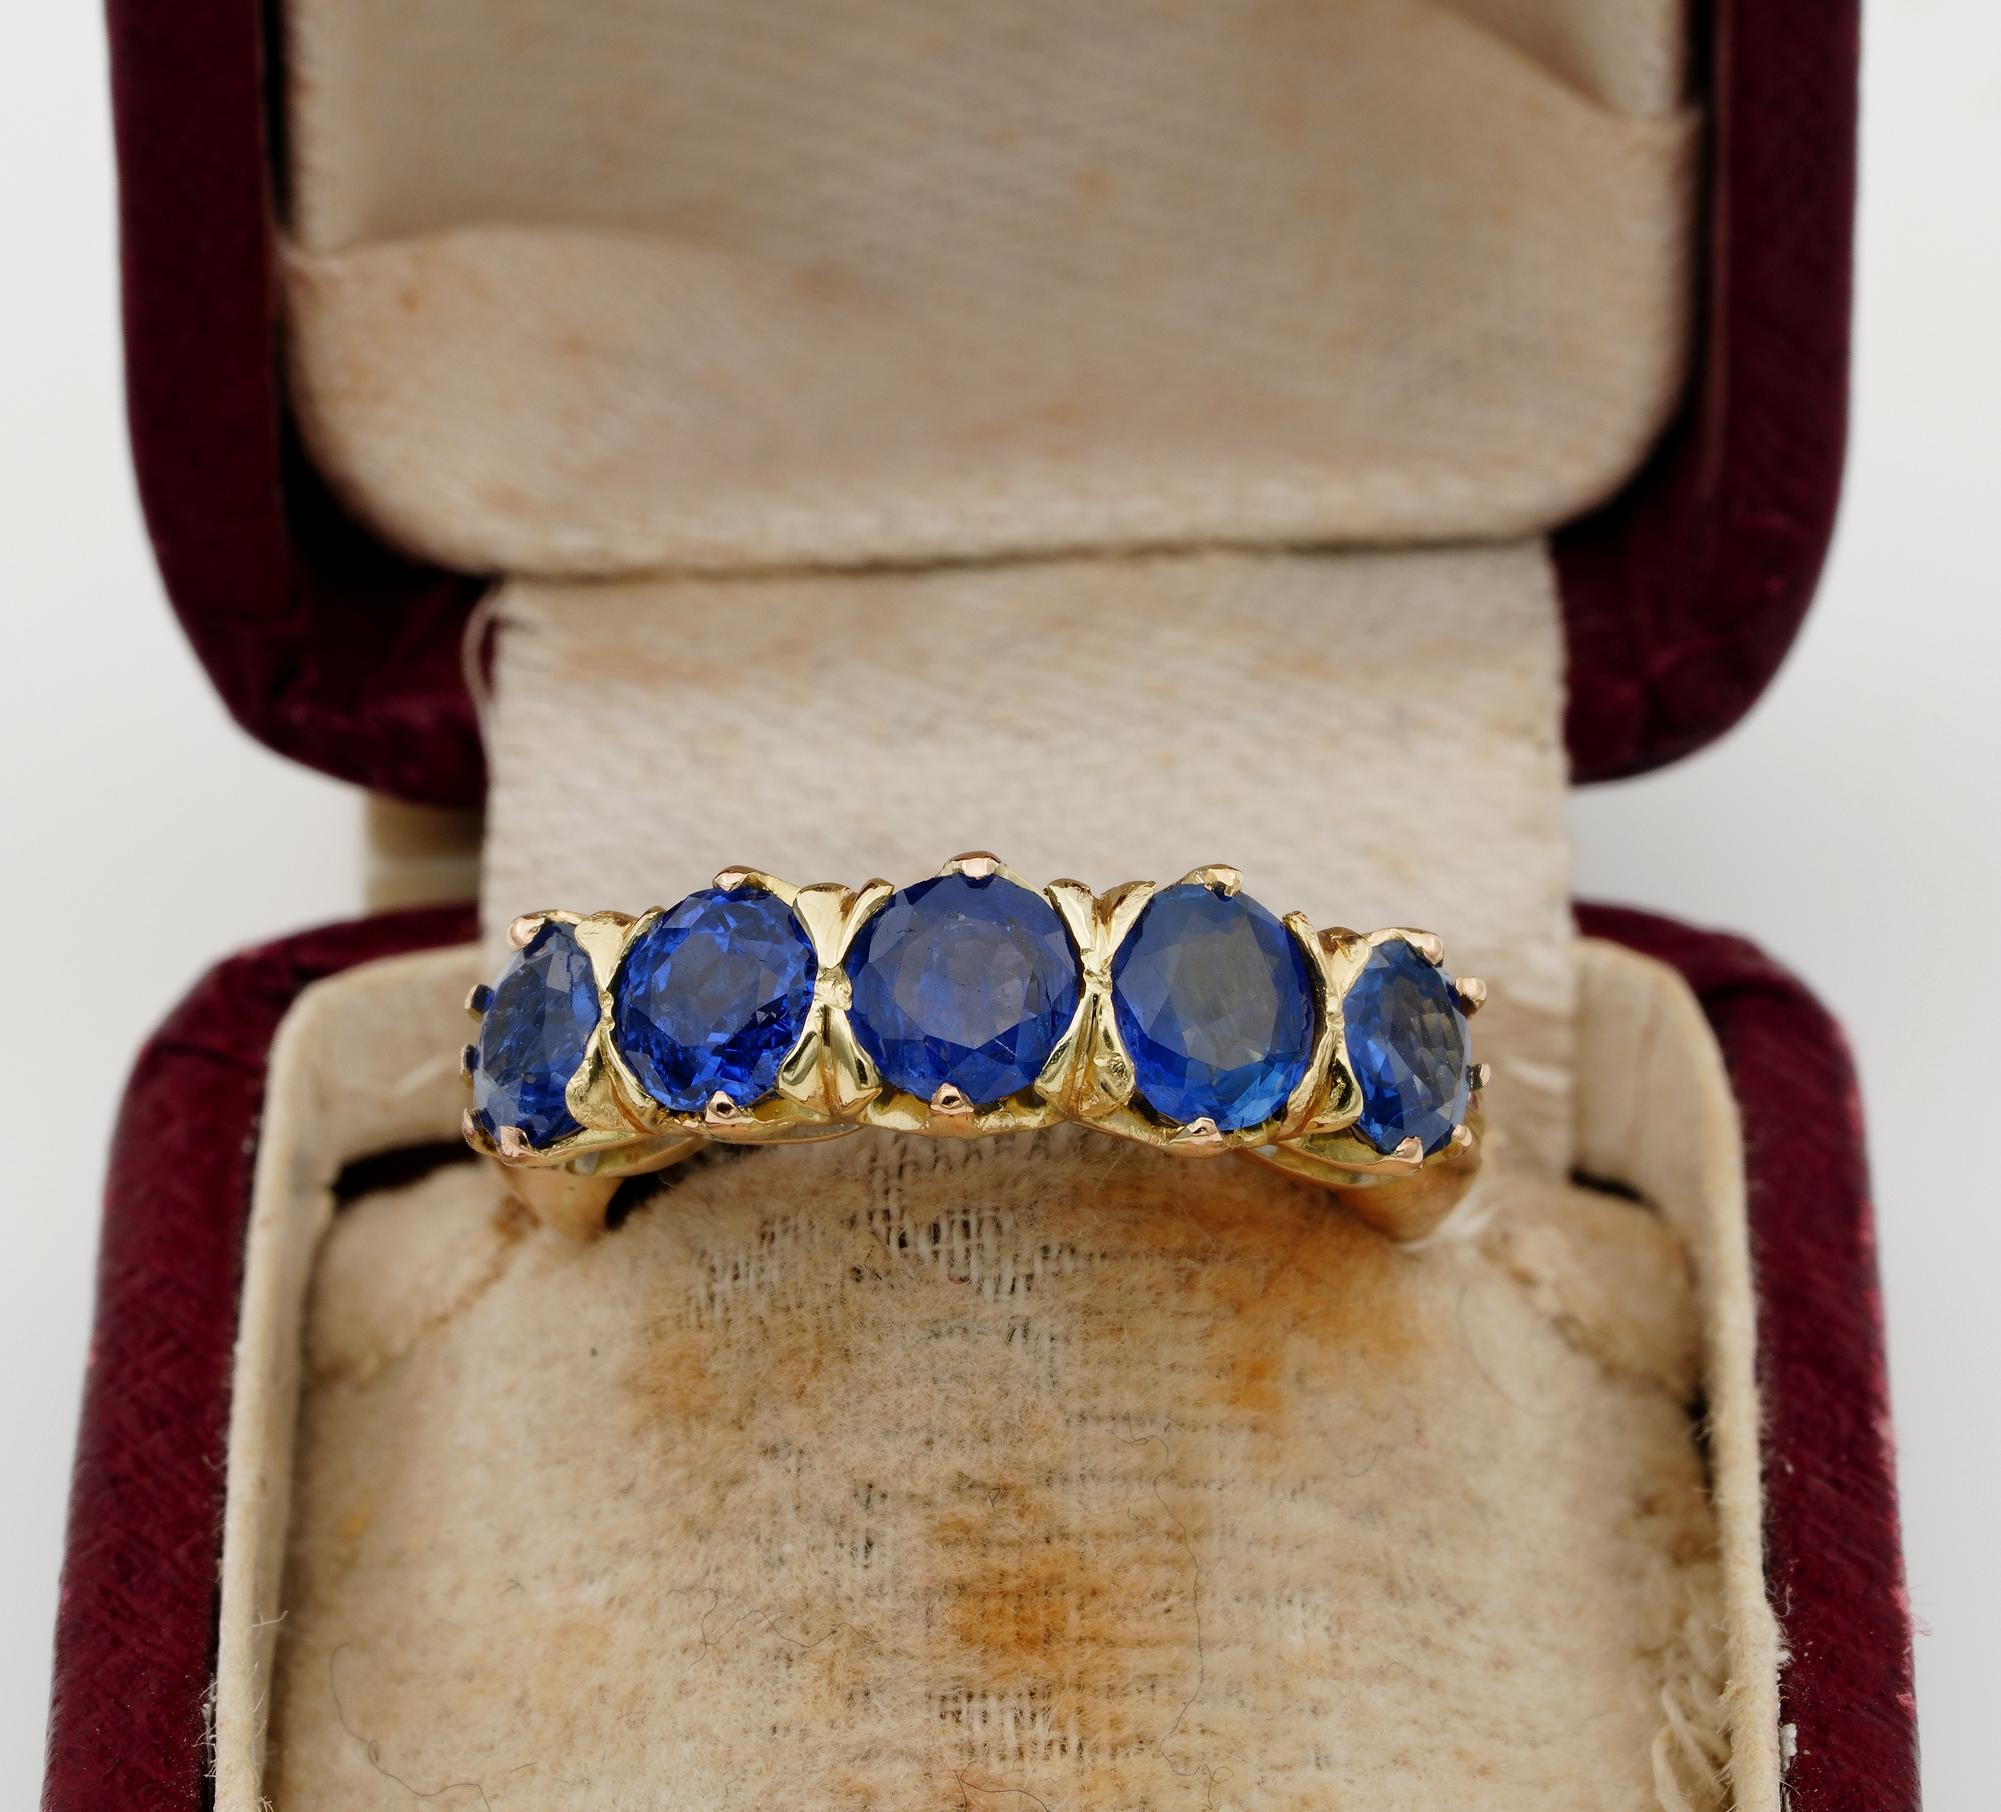 Superb 1930 ca fünf Stein natürlichen Sapphire Ring
Handgefertigte Fassung aus massivem 18-karätigem Gold
entworfen mit einem erhabenen Bund, der die Anordnung der Steine anhebt, um mehr Wirkung zu erzielen
Set mit einer Reihe von fünf runden